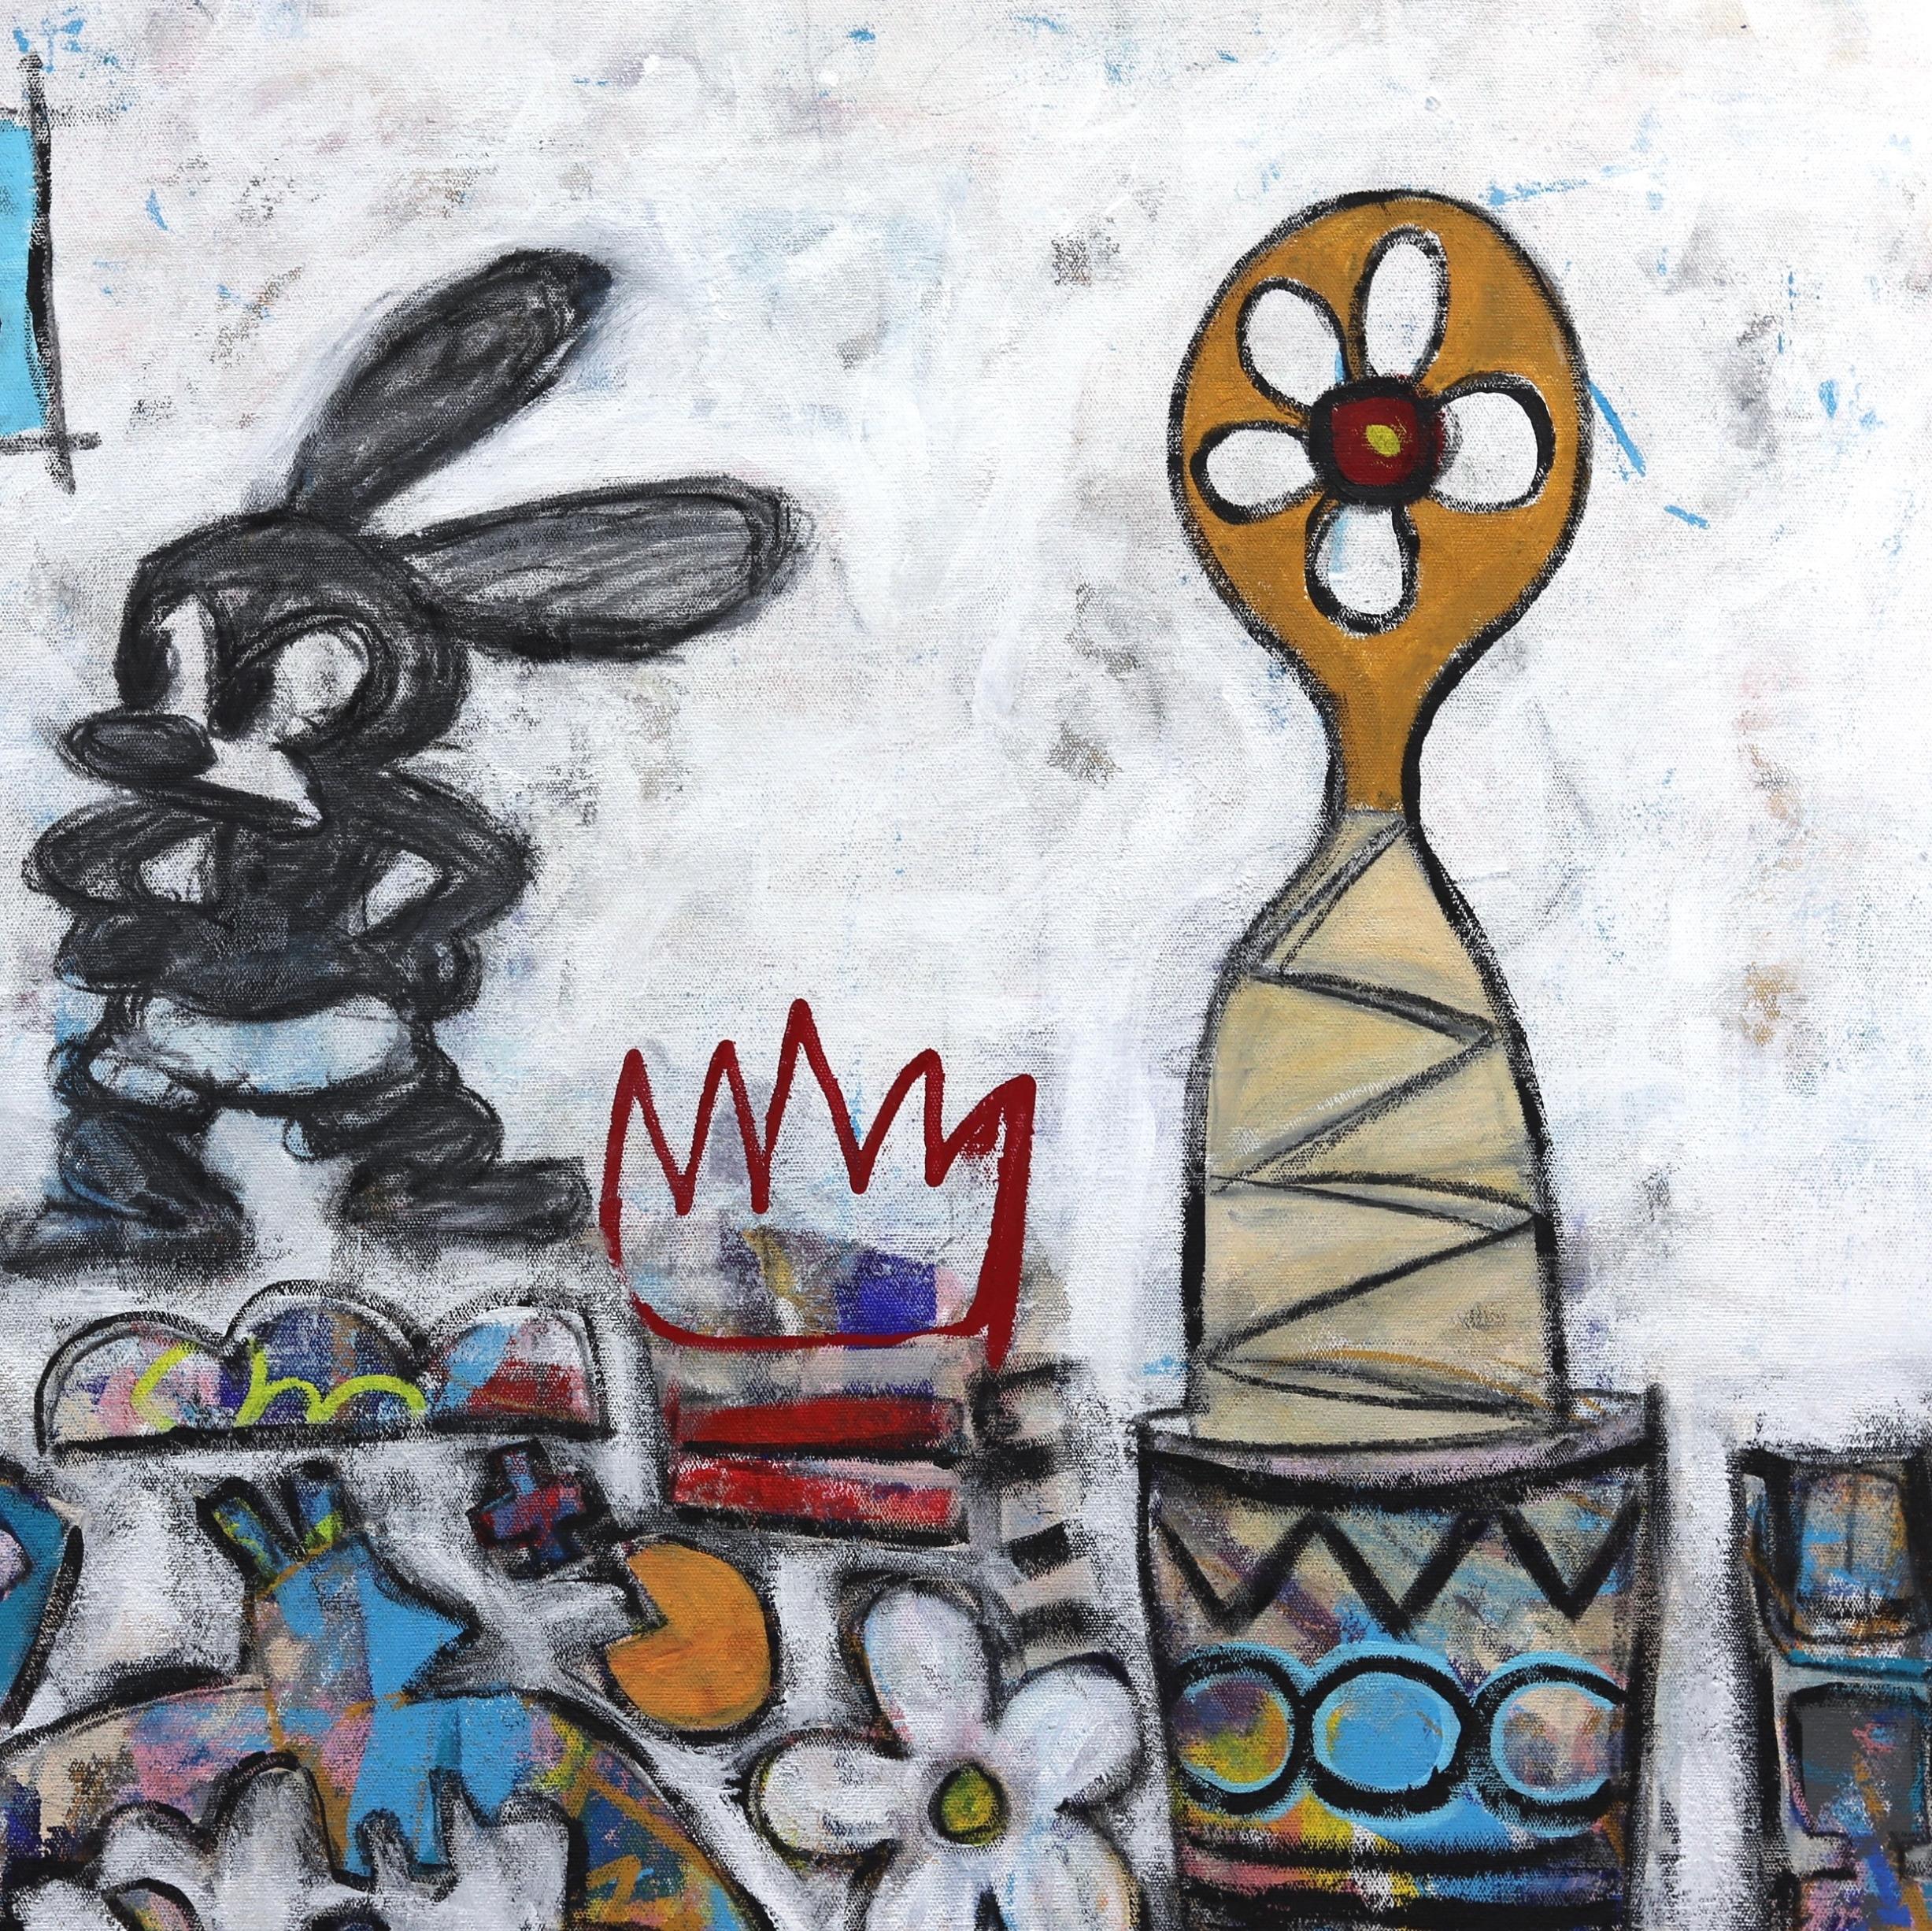 Der urbane abstrakte Expressionismus-Künstler Tommy Lennartsson greift bei der Schaffung seiner originellen, lebendigen Mixed-Media-Kunstwerke auf die visuelle Kultur der Street- und Pop-Art zurück. Er verwendet eine Mischung aus abstrakten und